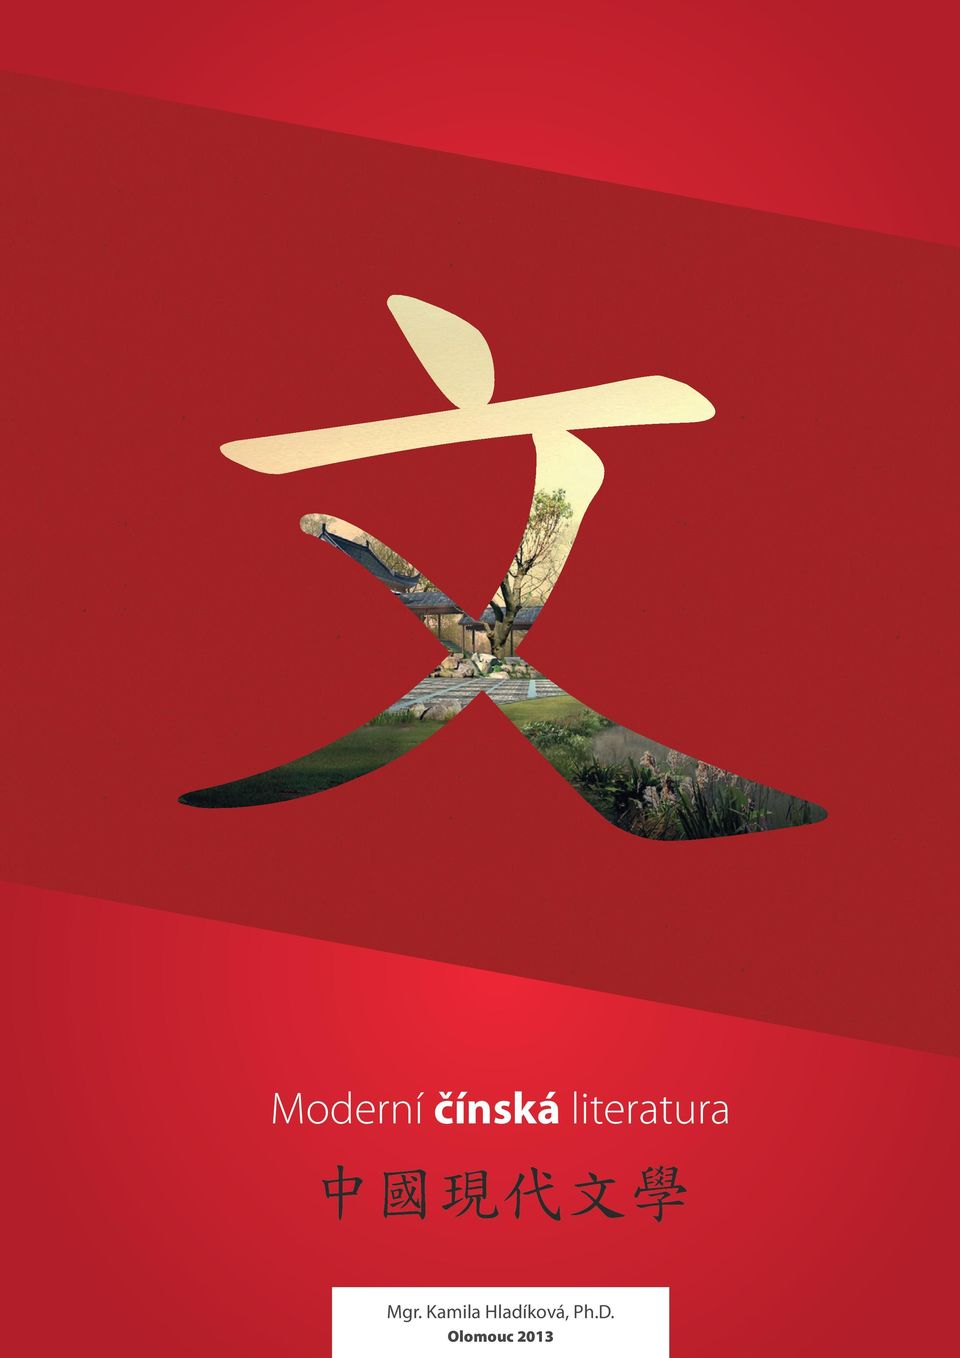 Moderní čínská literatura 中 國 現 代 文 學. Mgr. Kamila Hladíková, Ph.D. - PDF  Stažení zdarma